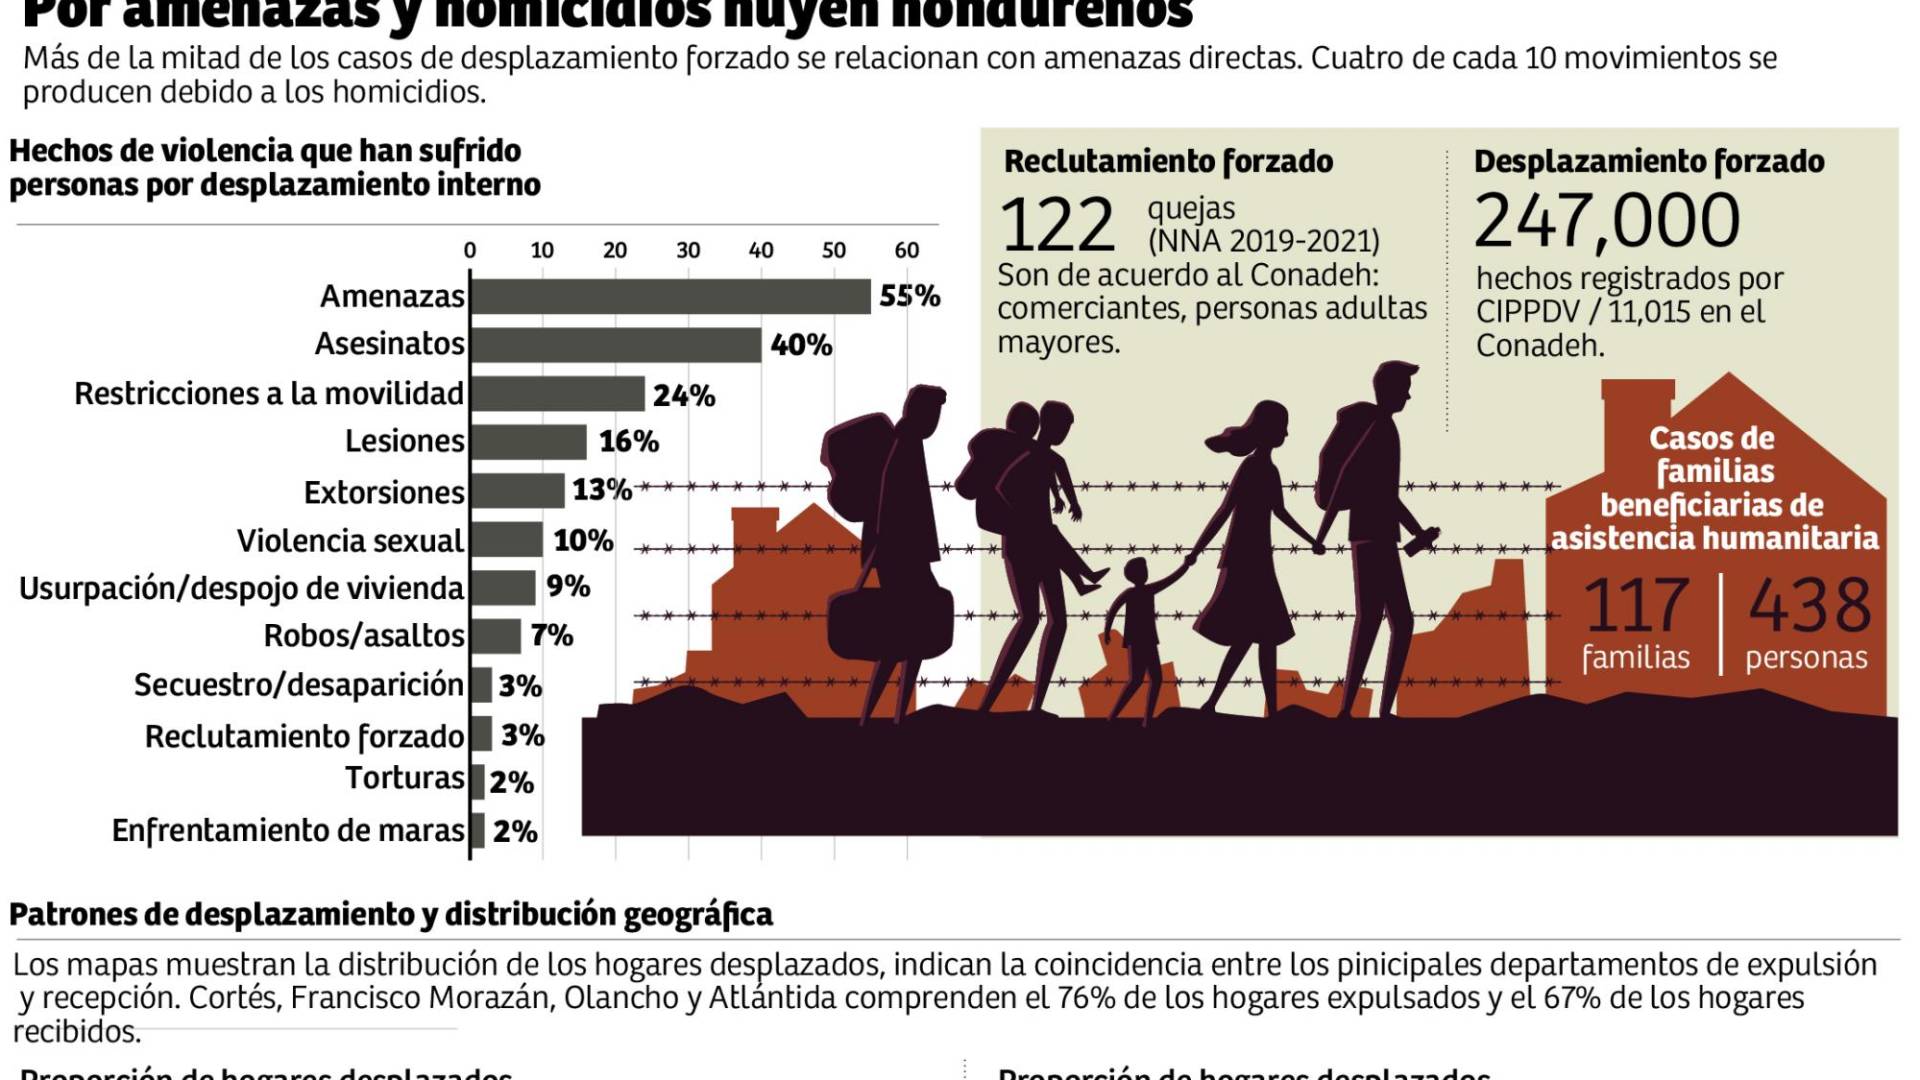 $!Más de 258,000 hondureños son “nómadas” por la violencia